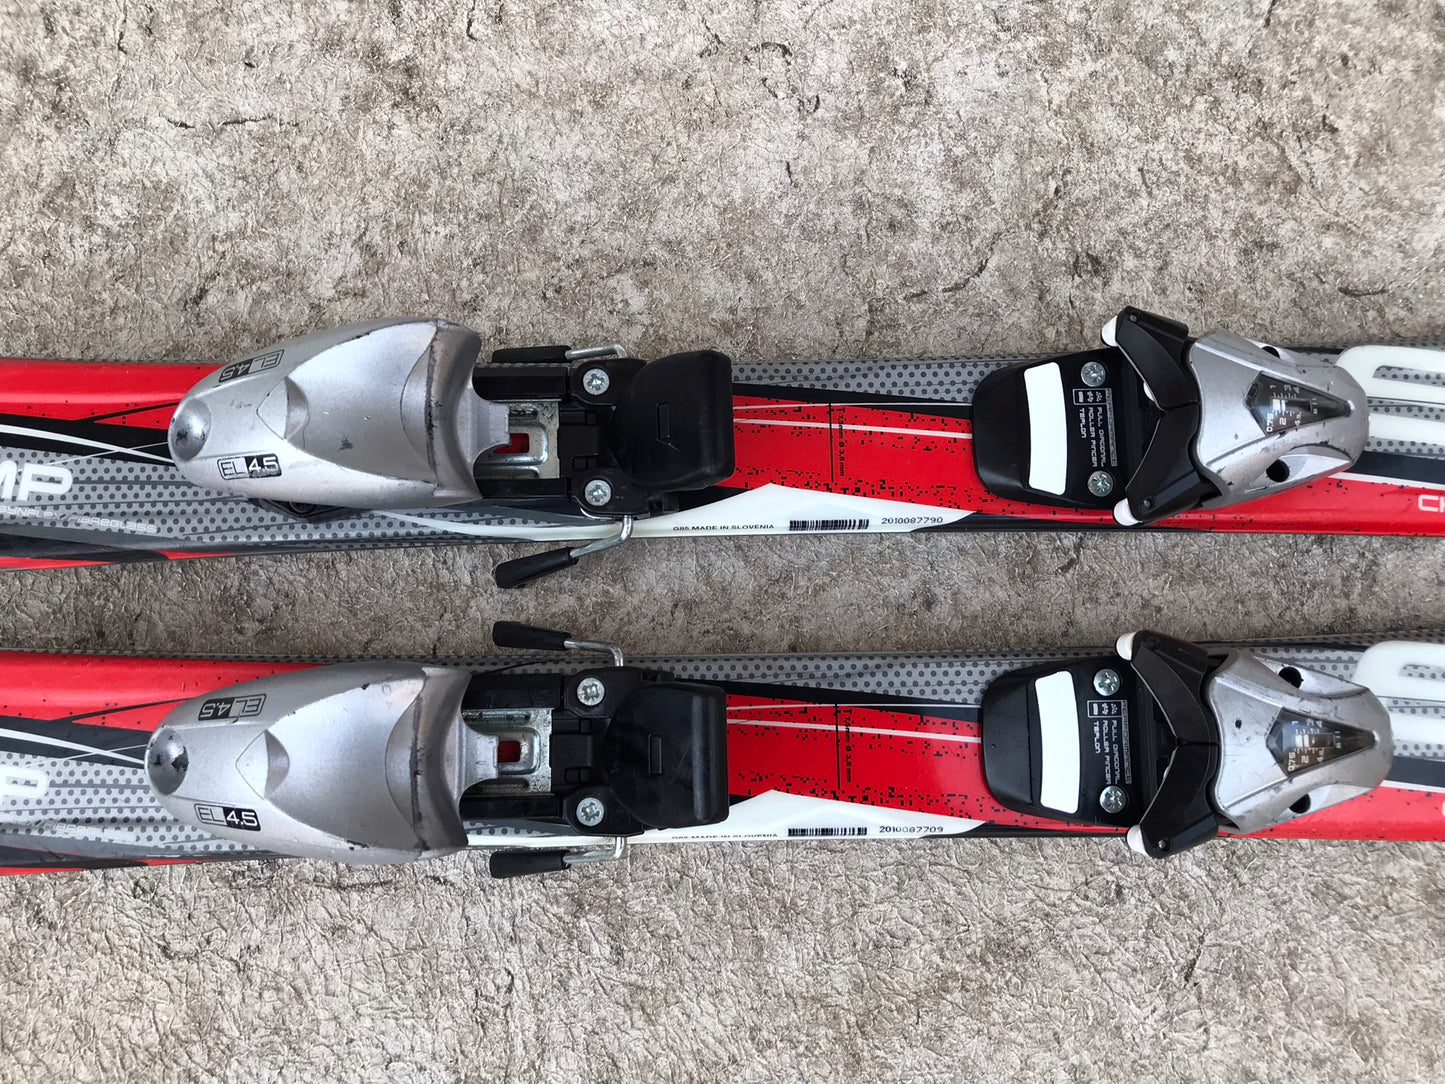 Ski 110 Elan Black Grey Red Parabolic With Bindings